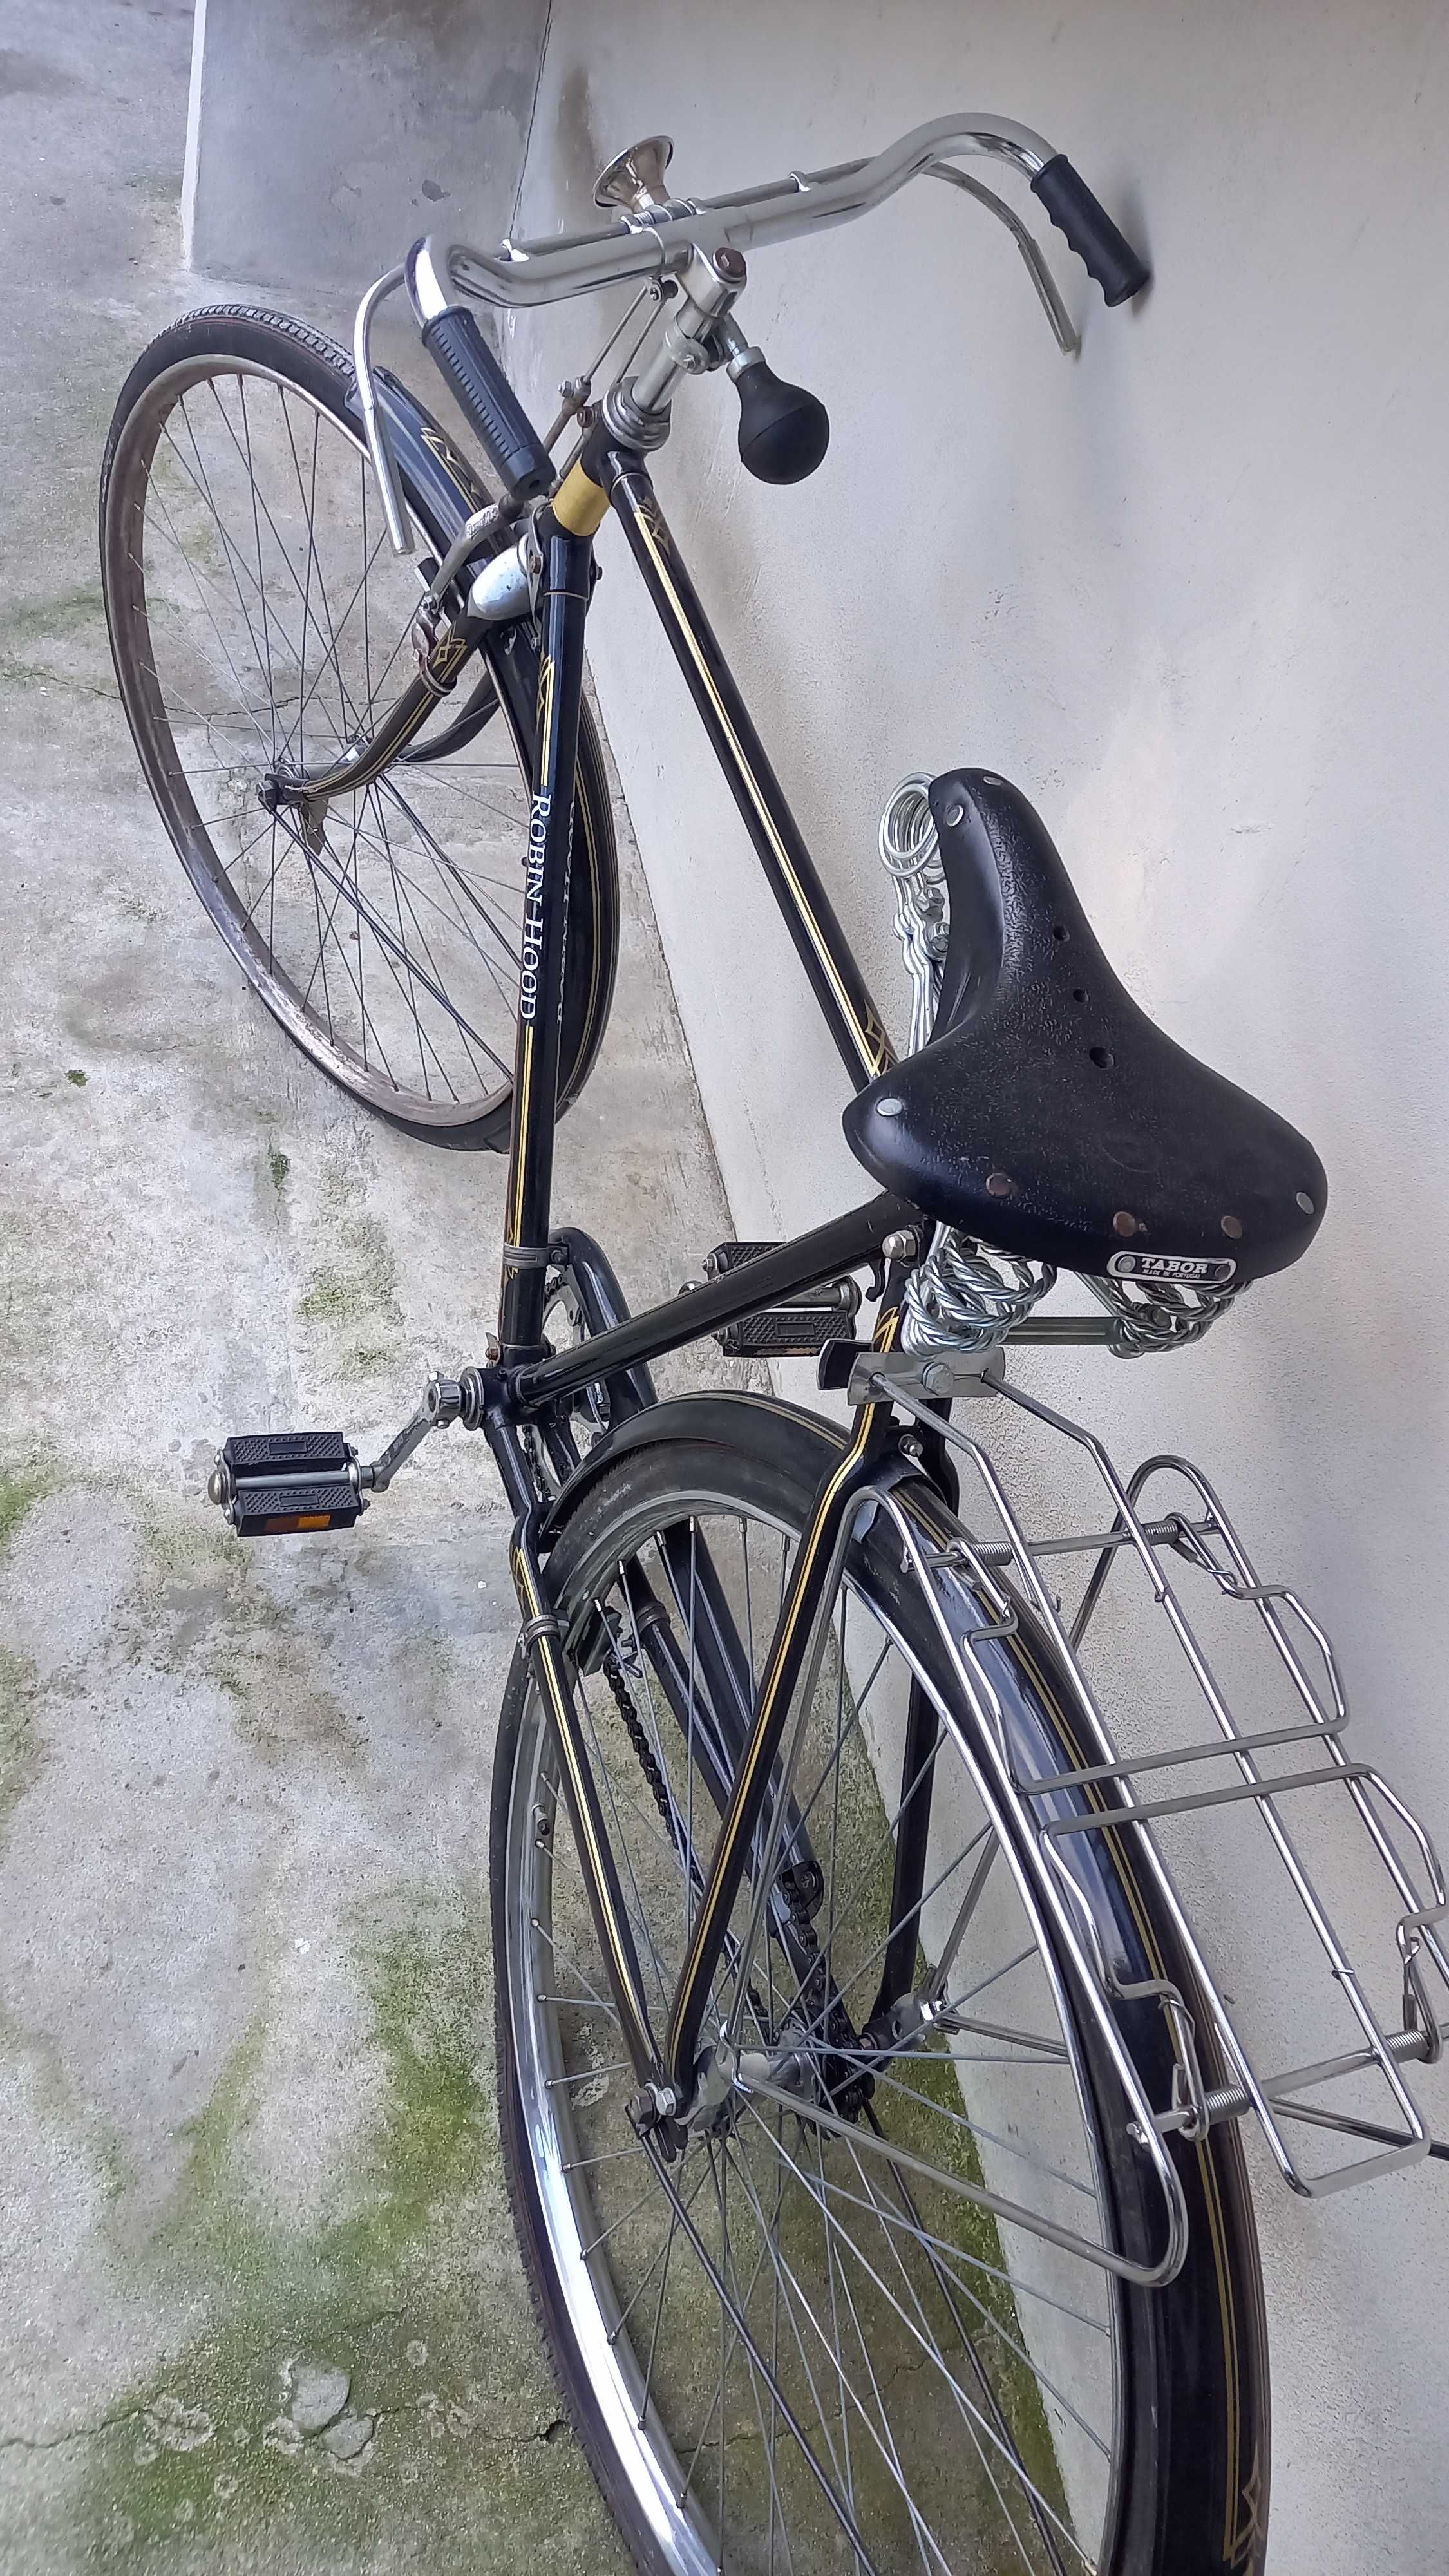 Bicicleta pastelaria